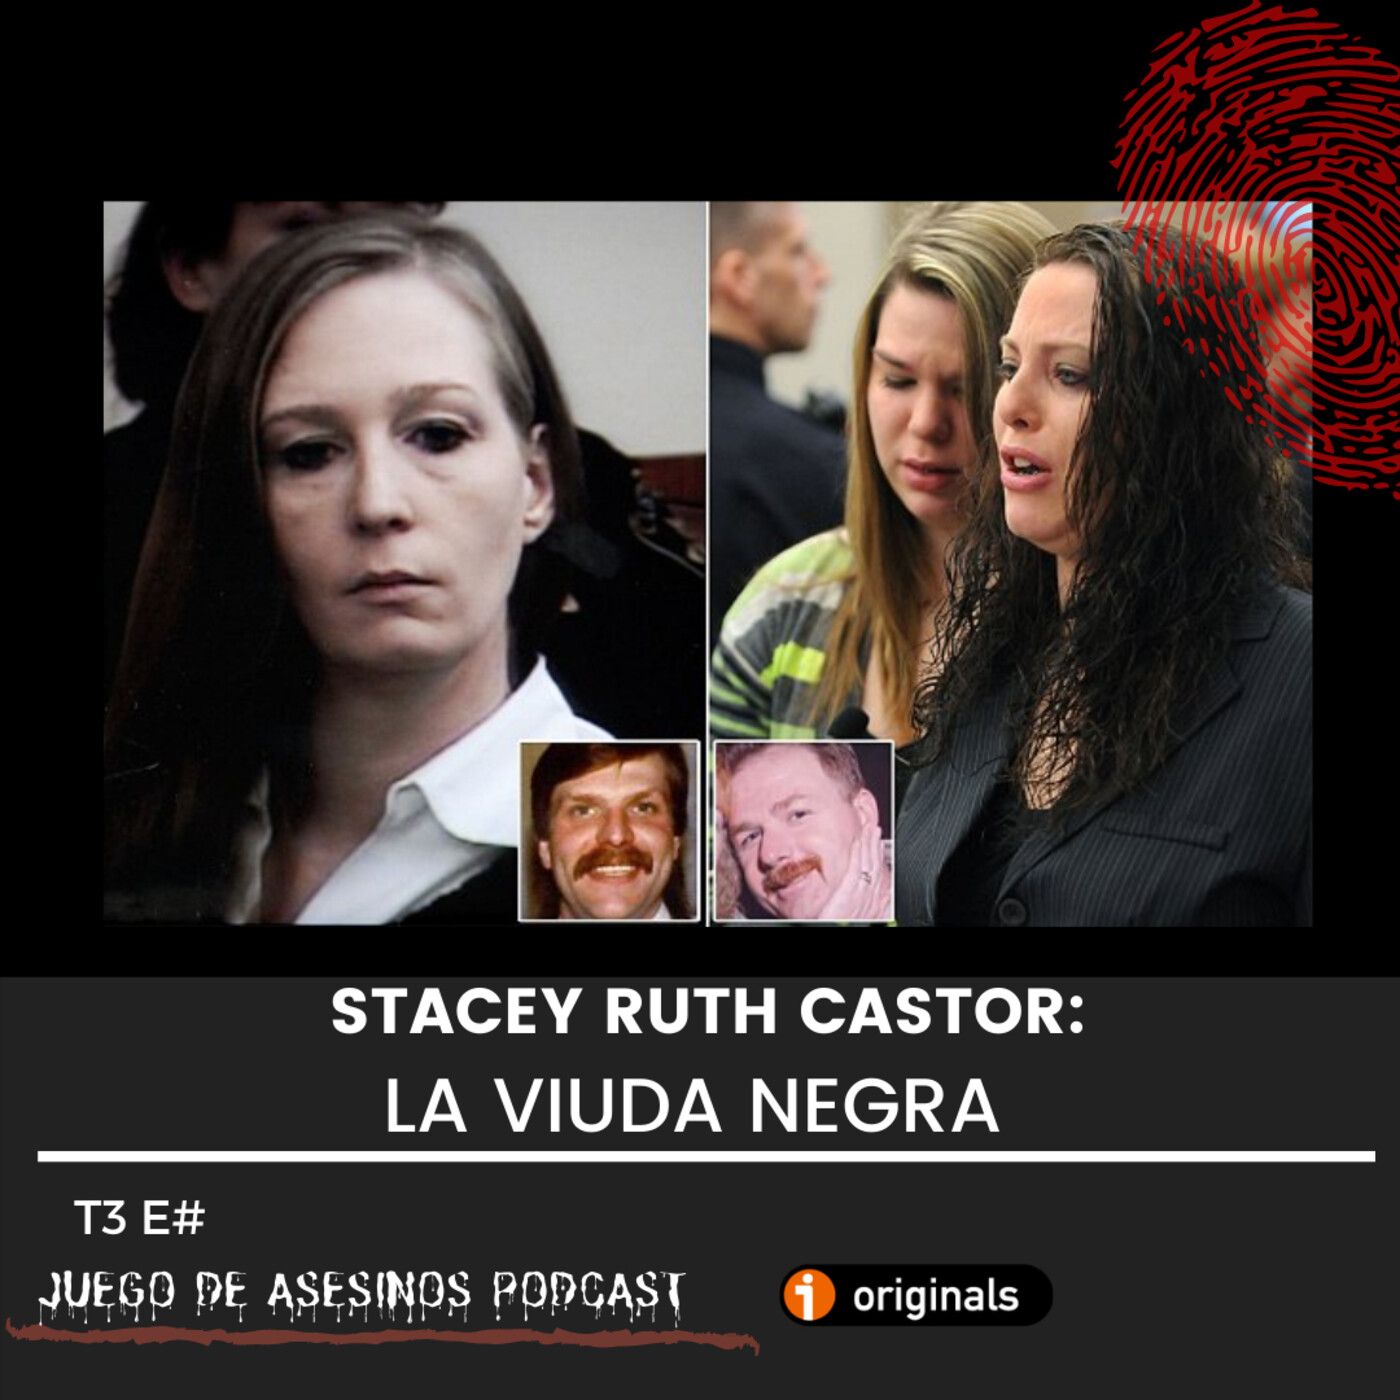 T3 E15 La viuda negra Stacey Ruth Castor – Juego de asesinos podcast – Podcast